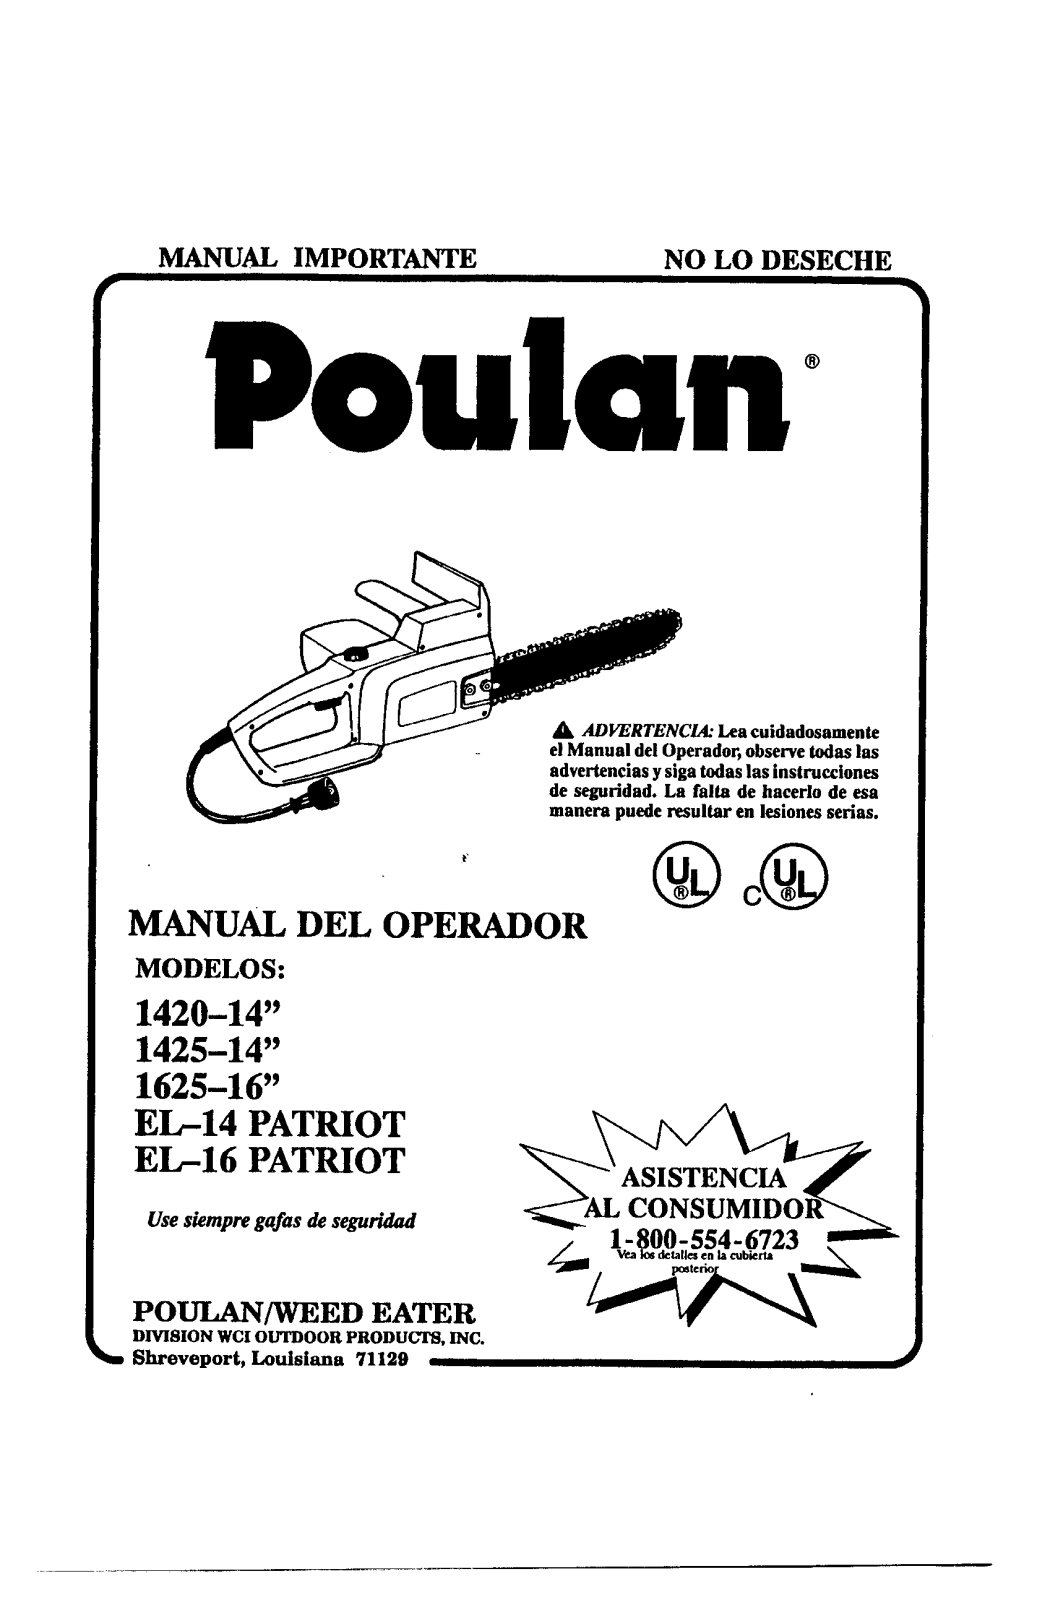 Poulan 1625-16, EL-14 PATRIOT, 1420-14, EL-16 PATRIOT, 1425-14 Manual